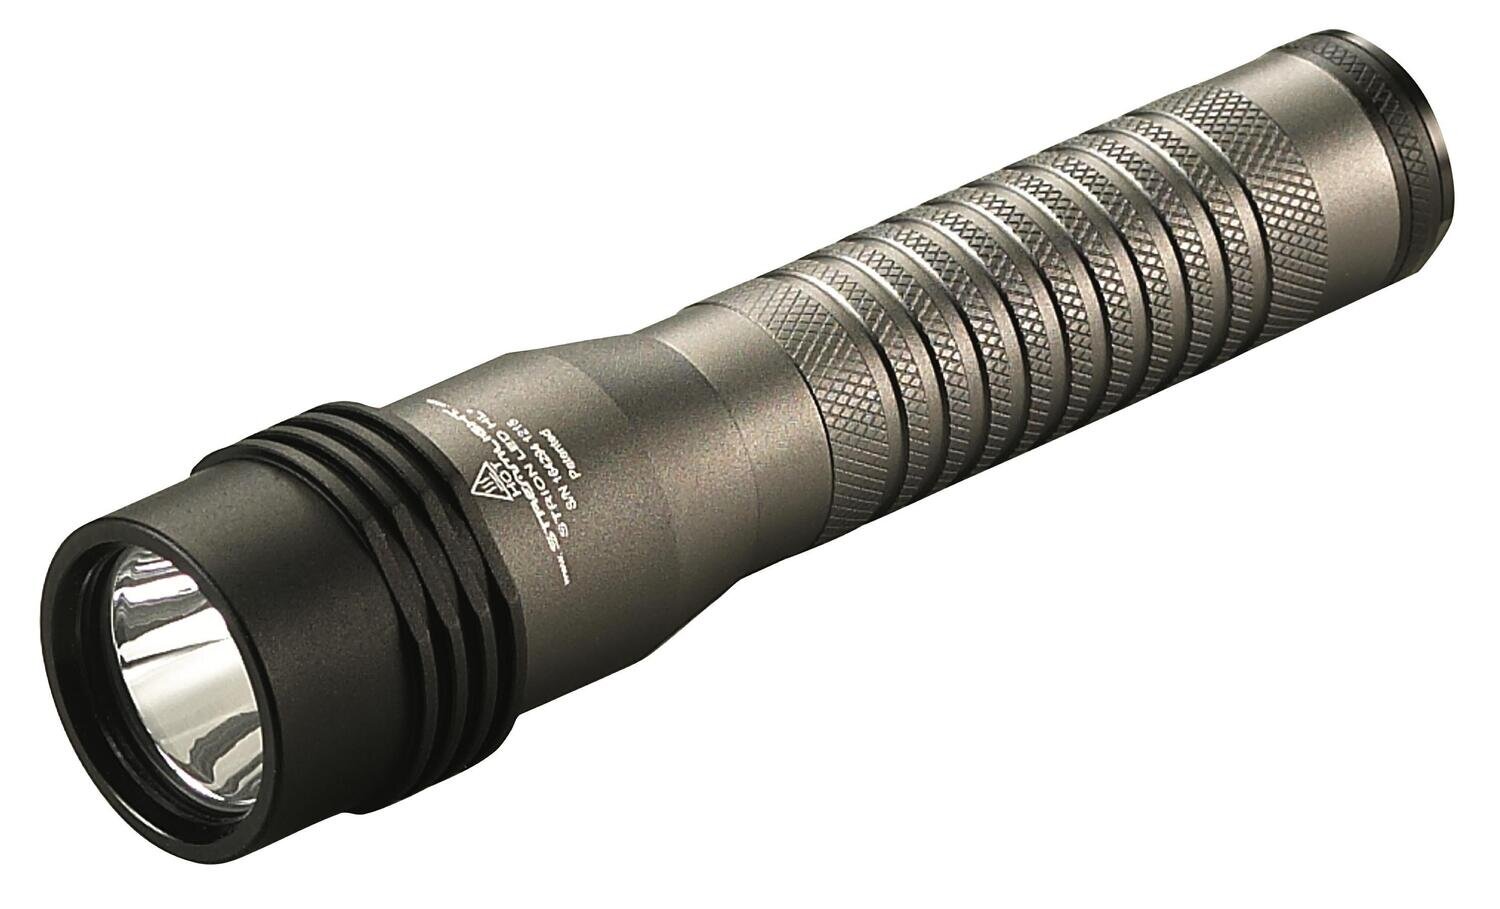 STL74391 - Strion LED HL® Flashlight with PiggyBack® Charger